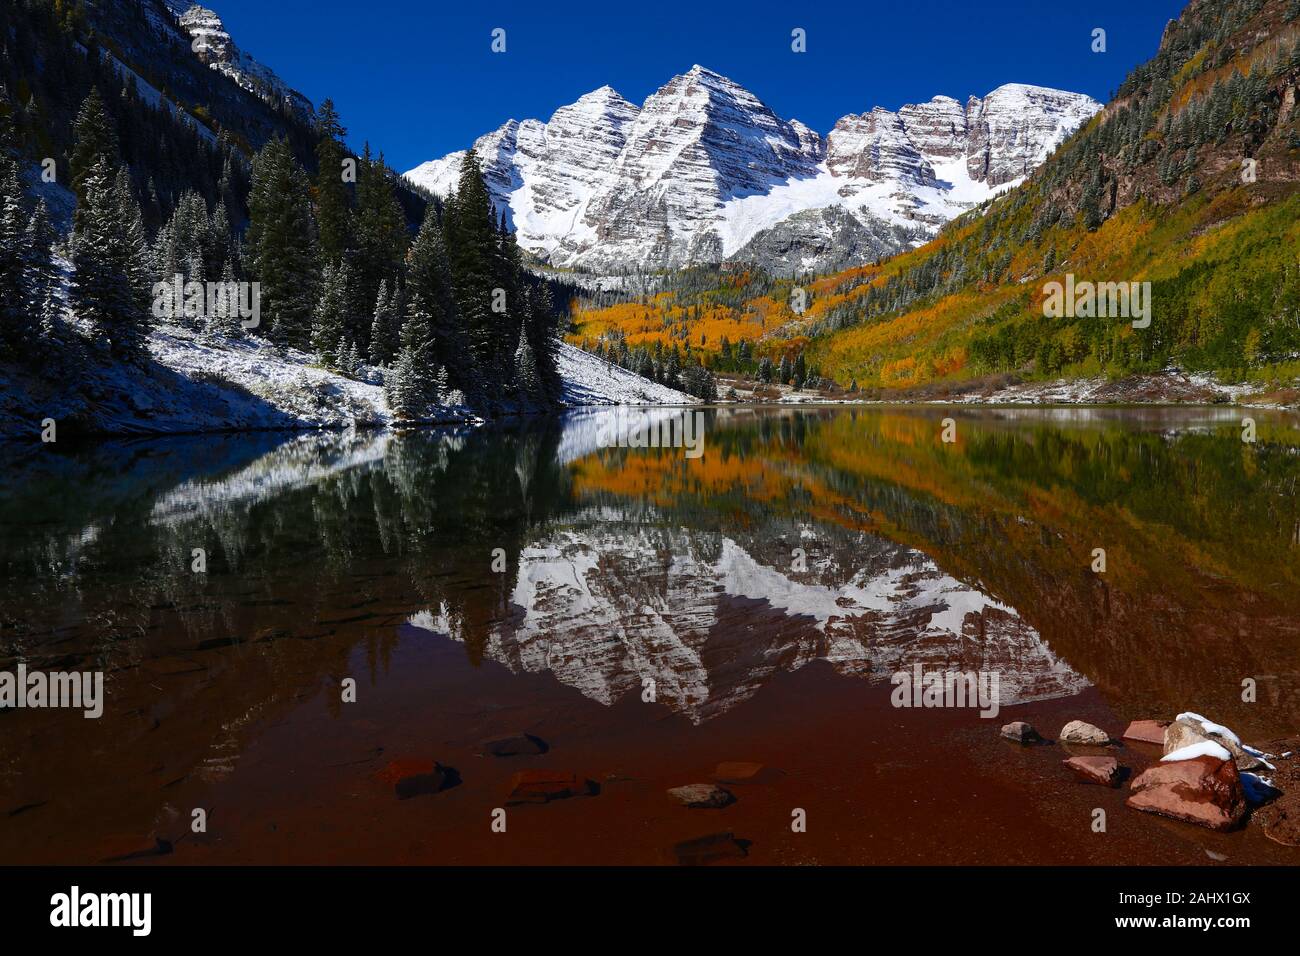 Maroon Bells Herbst Laub und Aspen Bäume im Schnee der Colorado Rocky Mountains und den See Reflexion über einen blauen Himmel Tag abgedeckt Stockfoto